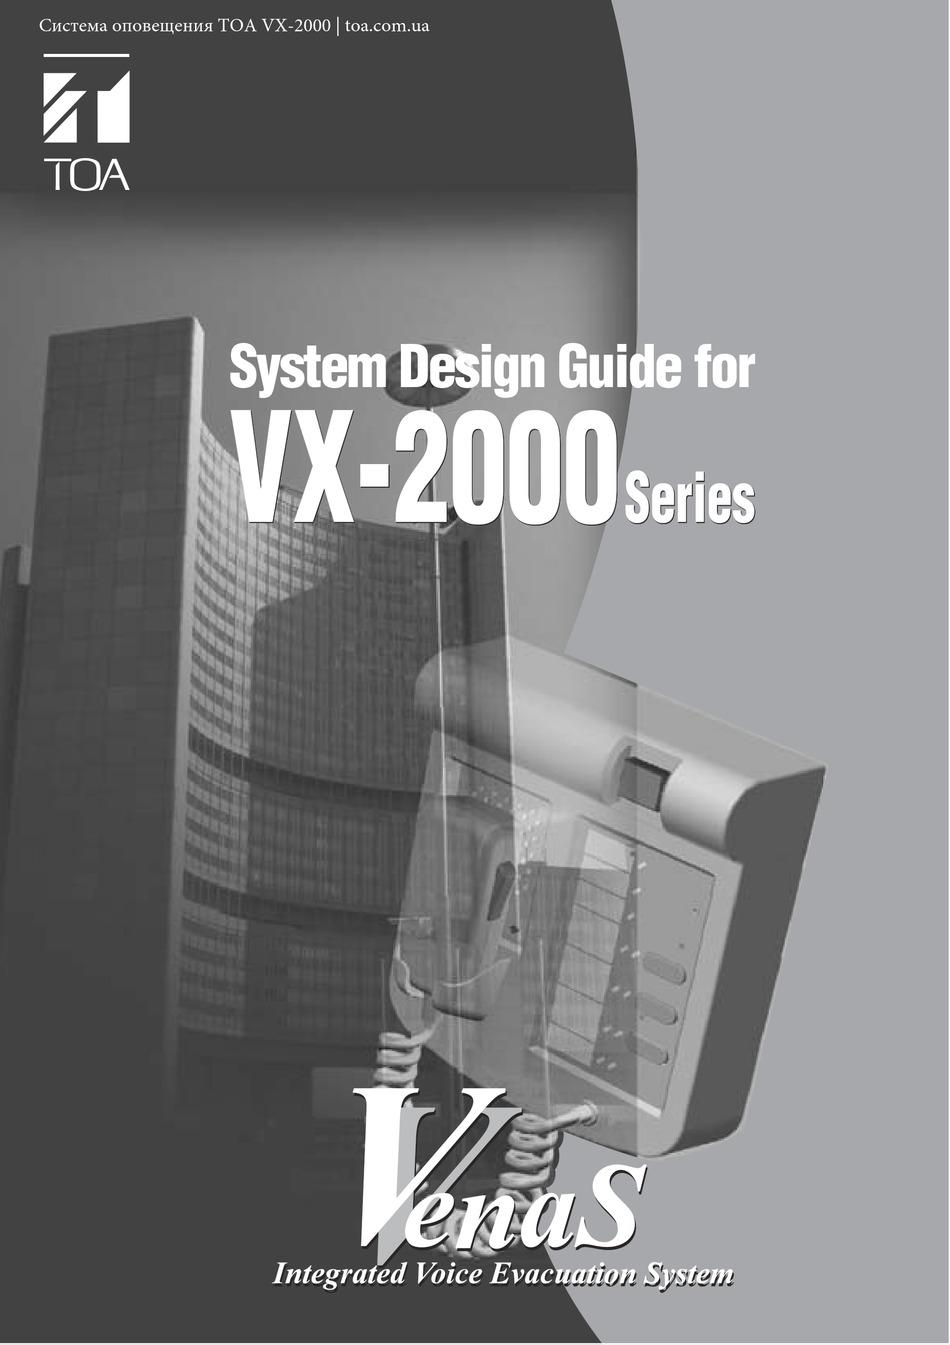 toa-vx-2000-series